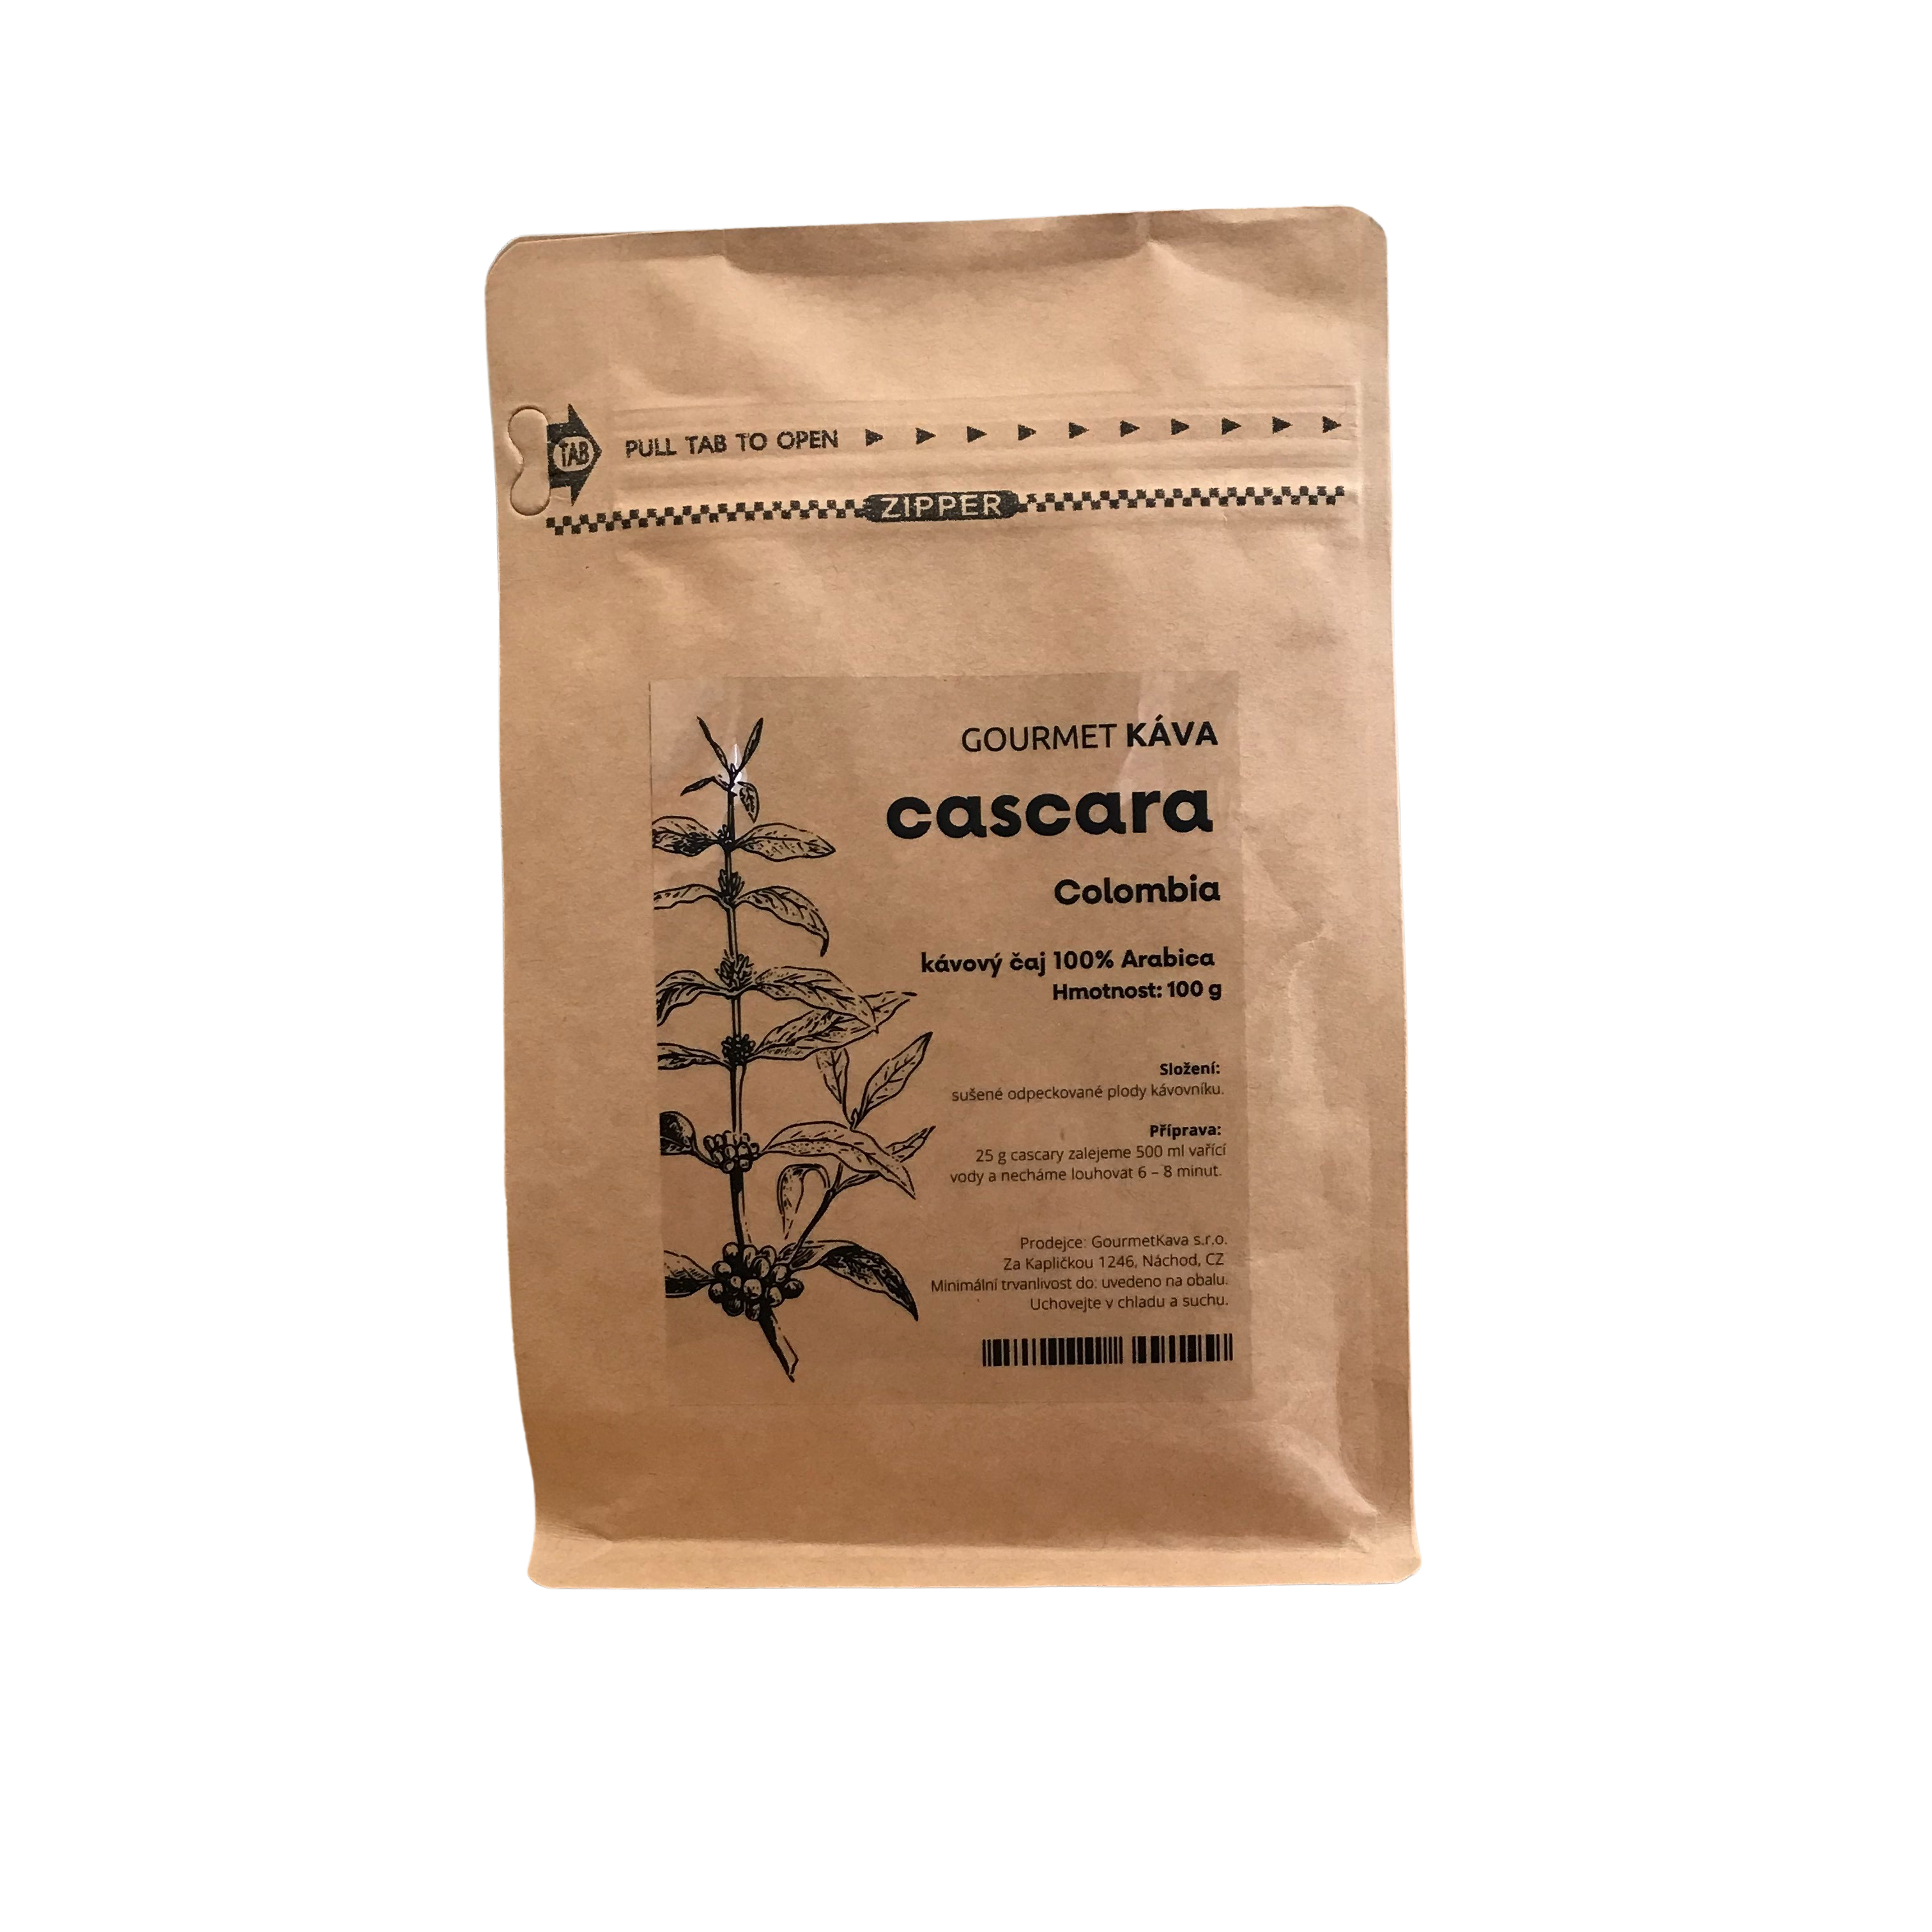 Kolumbiai kávétea Cascara, 100g